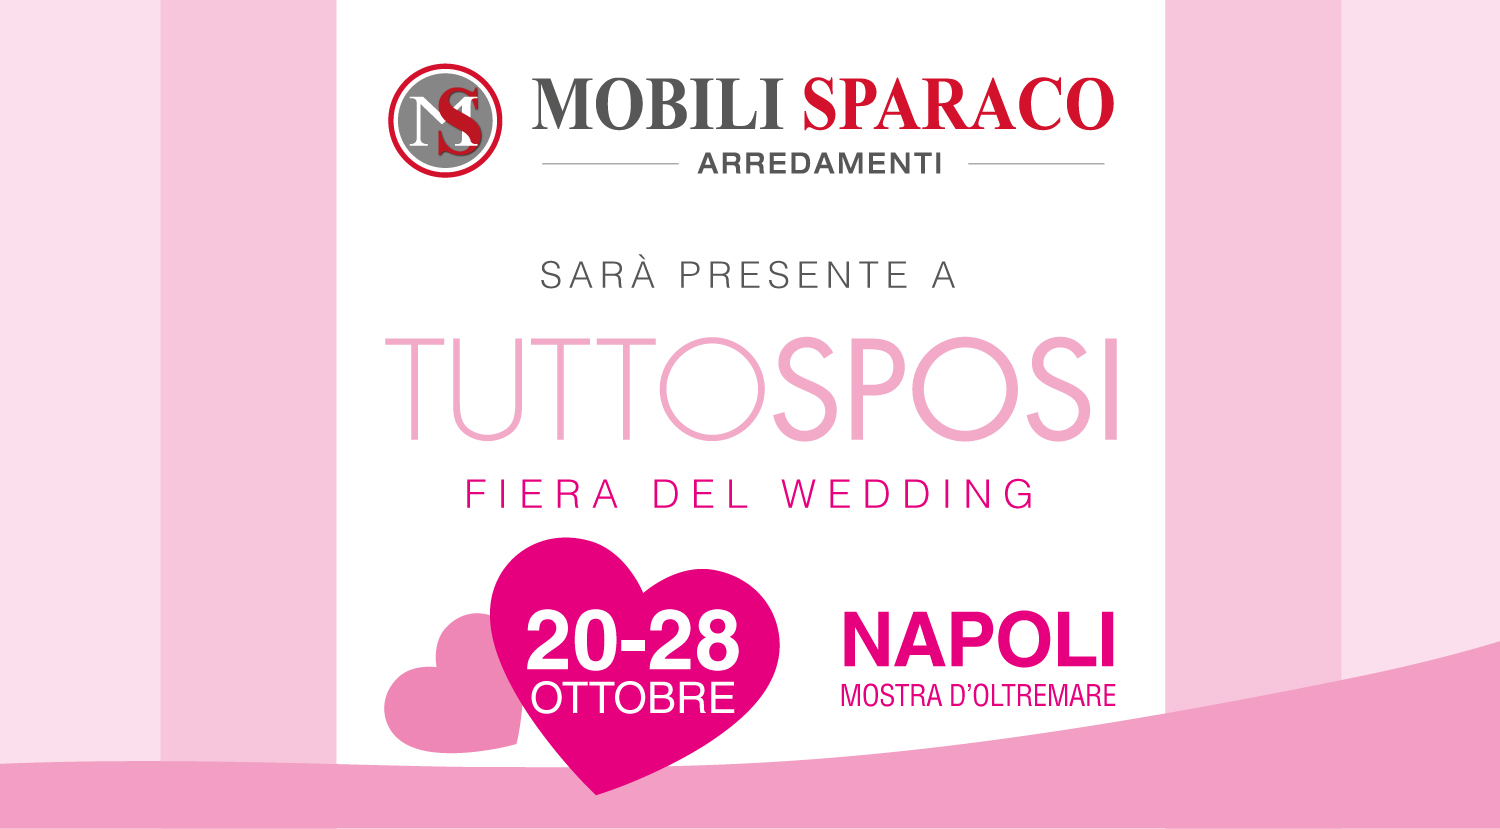 Mobili Sparaco sarà presente alla fiera del wedding Tutto Sposi 2018